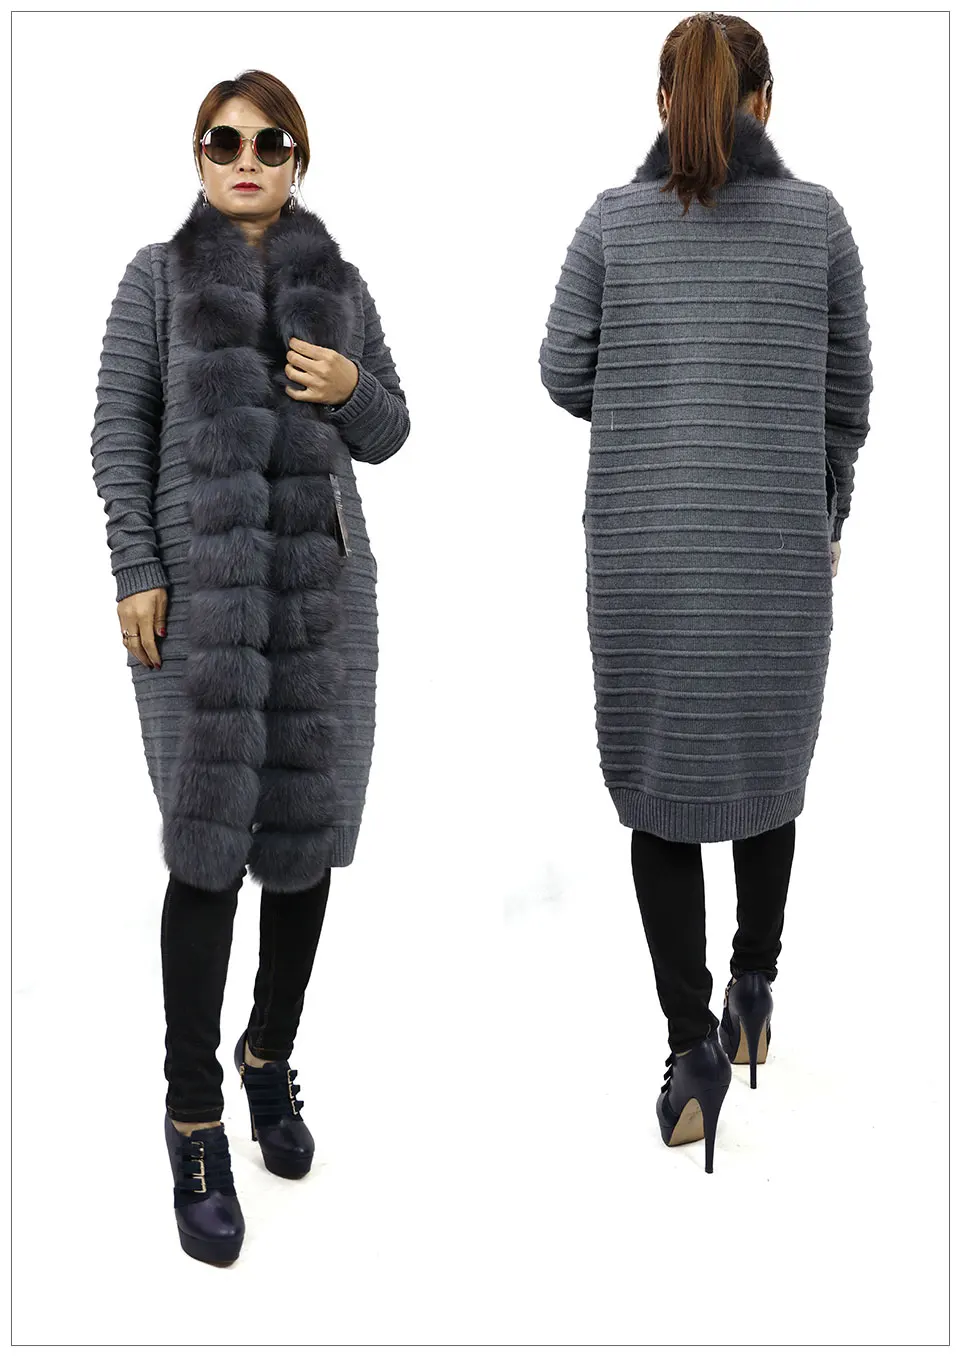 Шерсть свитер Кожа трава Лисий мех пальто модный тренд commuter Женская куртка, чтобы согреться Диана винтер2019